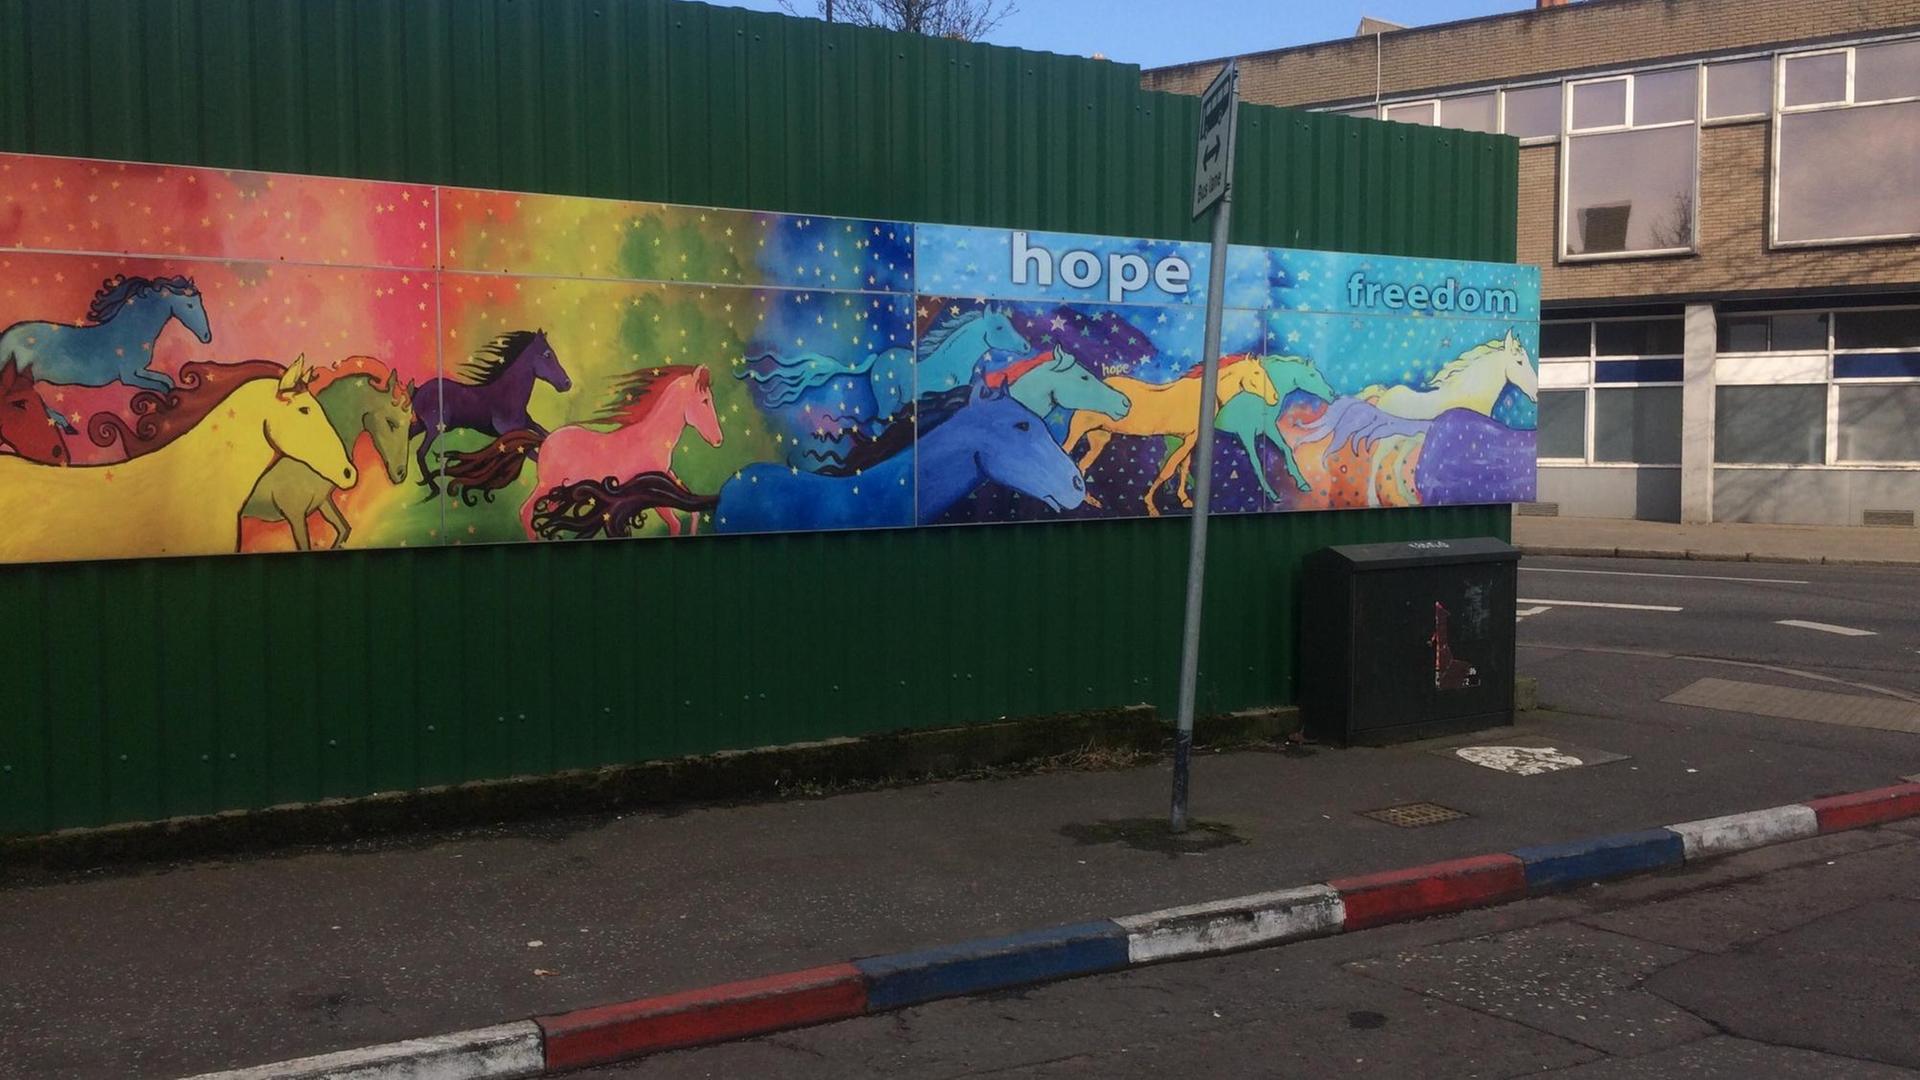 Unionisten markieren ihr Territorium im Norden Belfasts. Rot-weiß-blaue Bordsteinkante vor Streetart-Gemälde mit dem Schriftzug "hope", Hoffnung.